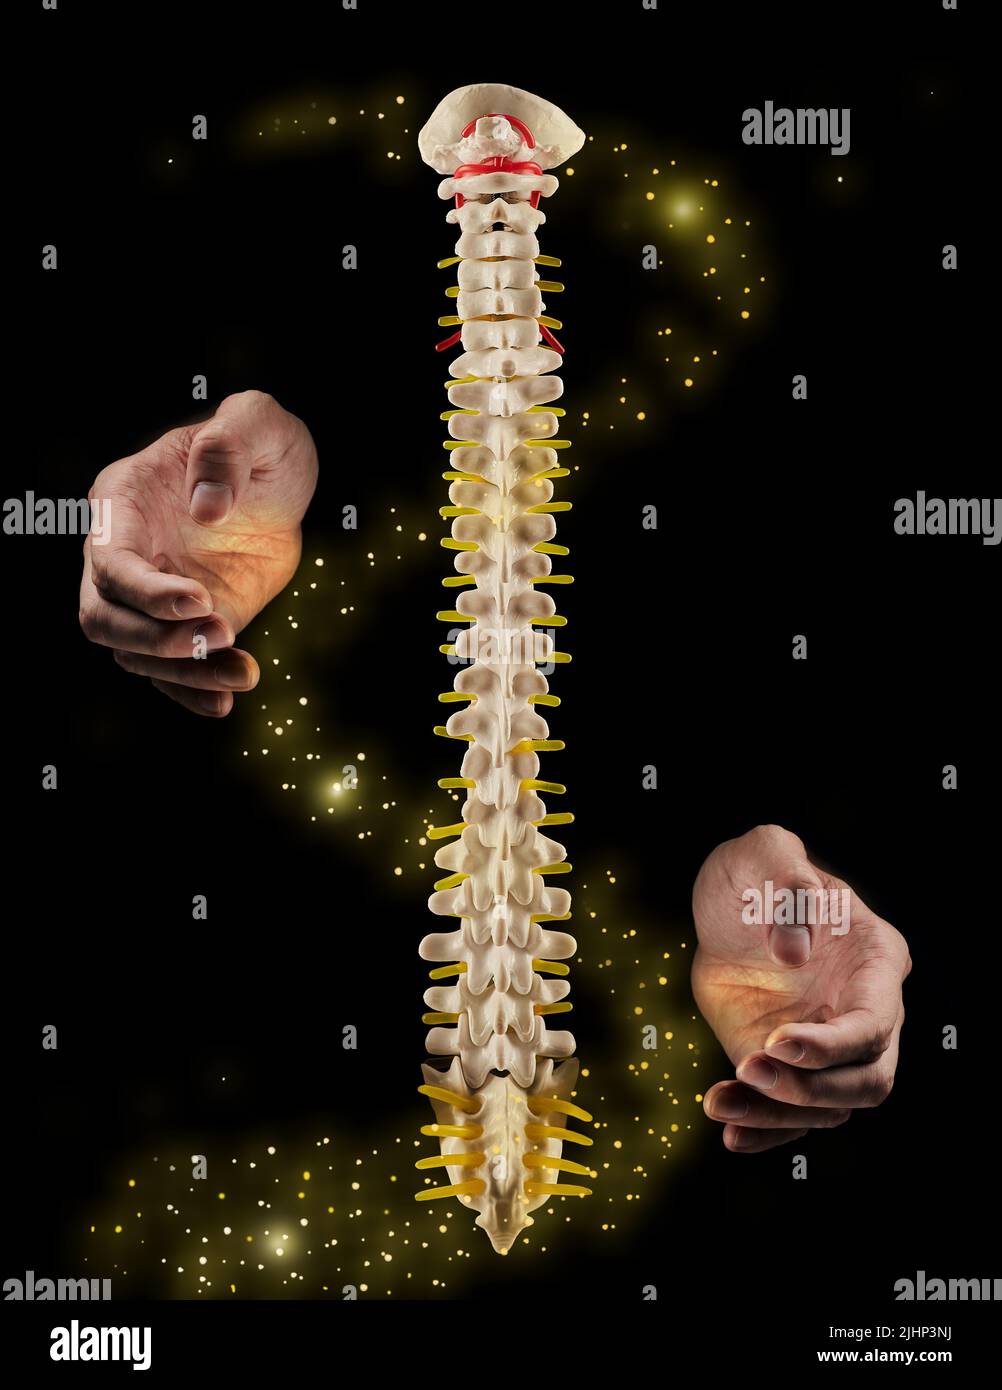 Wirbelsäulengesundheitskonzept. Die Hände des Chiropraktikers tun Wunder mit der menschlichen Wirbelsäule oder dem Rückgrat, kunstliche Visualisierung der Gesundheit der menschlichen Wirbelsäule auf schwarzem Hintergrund Stockfoto